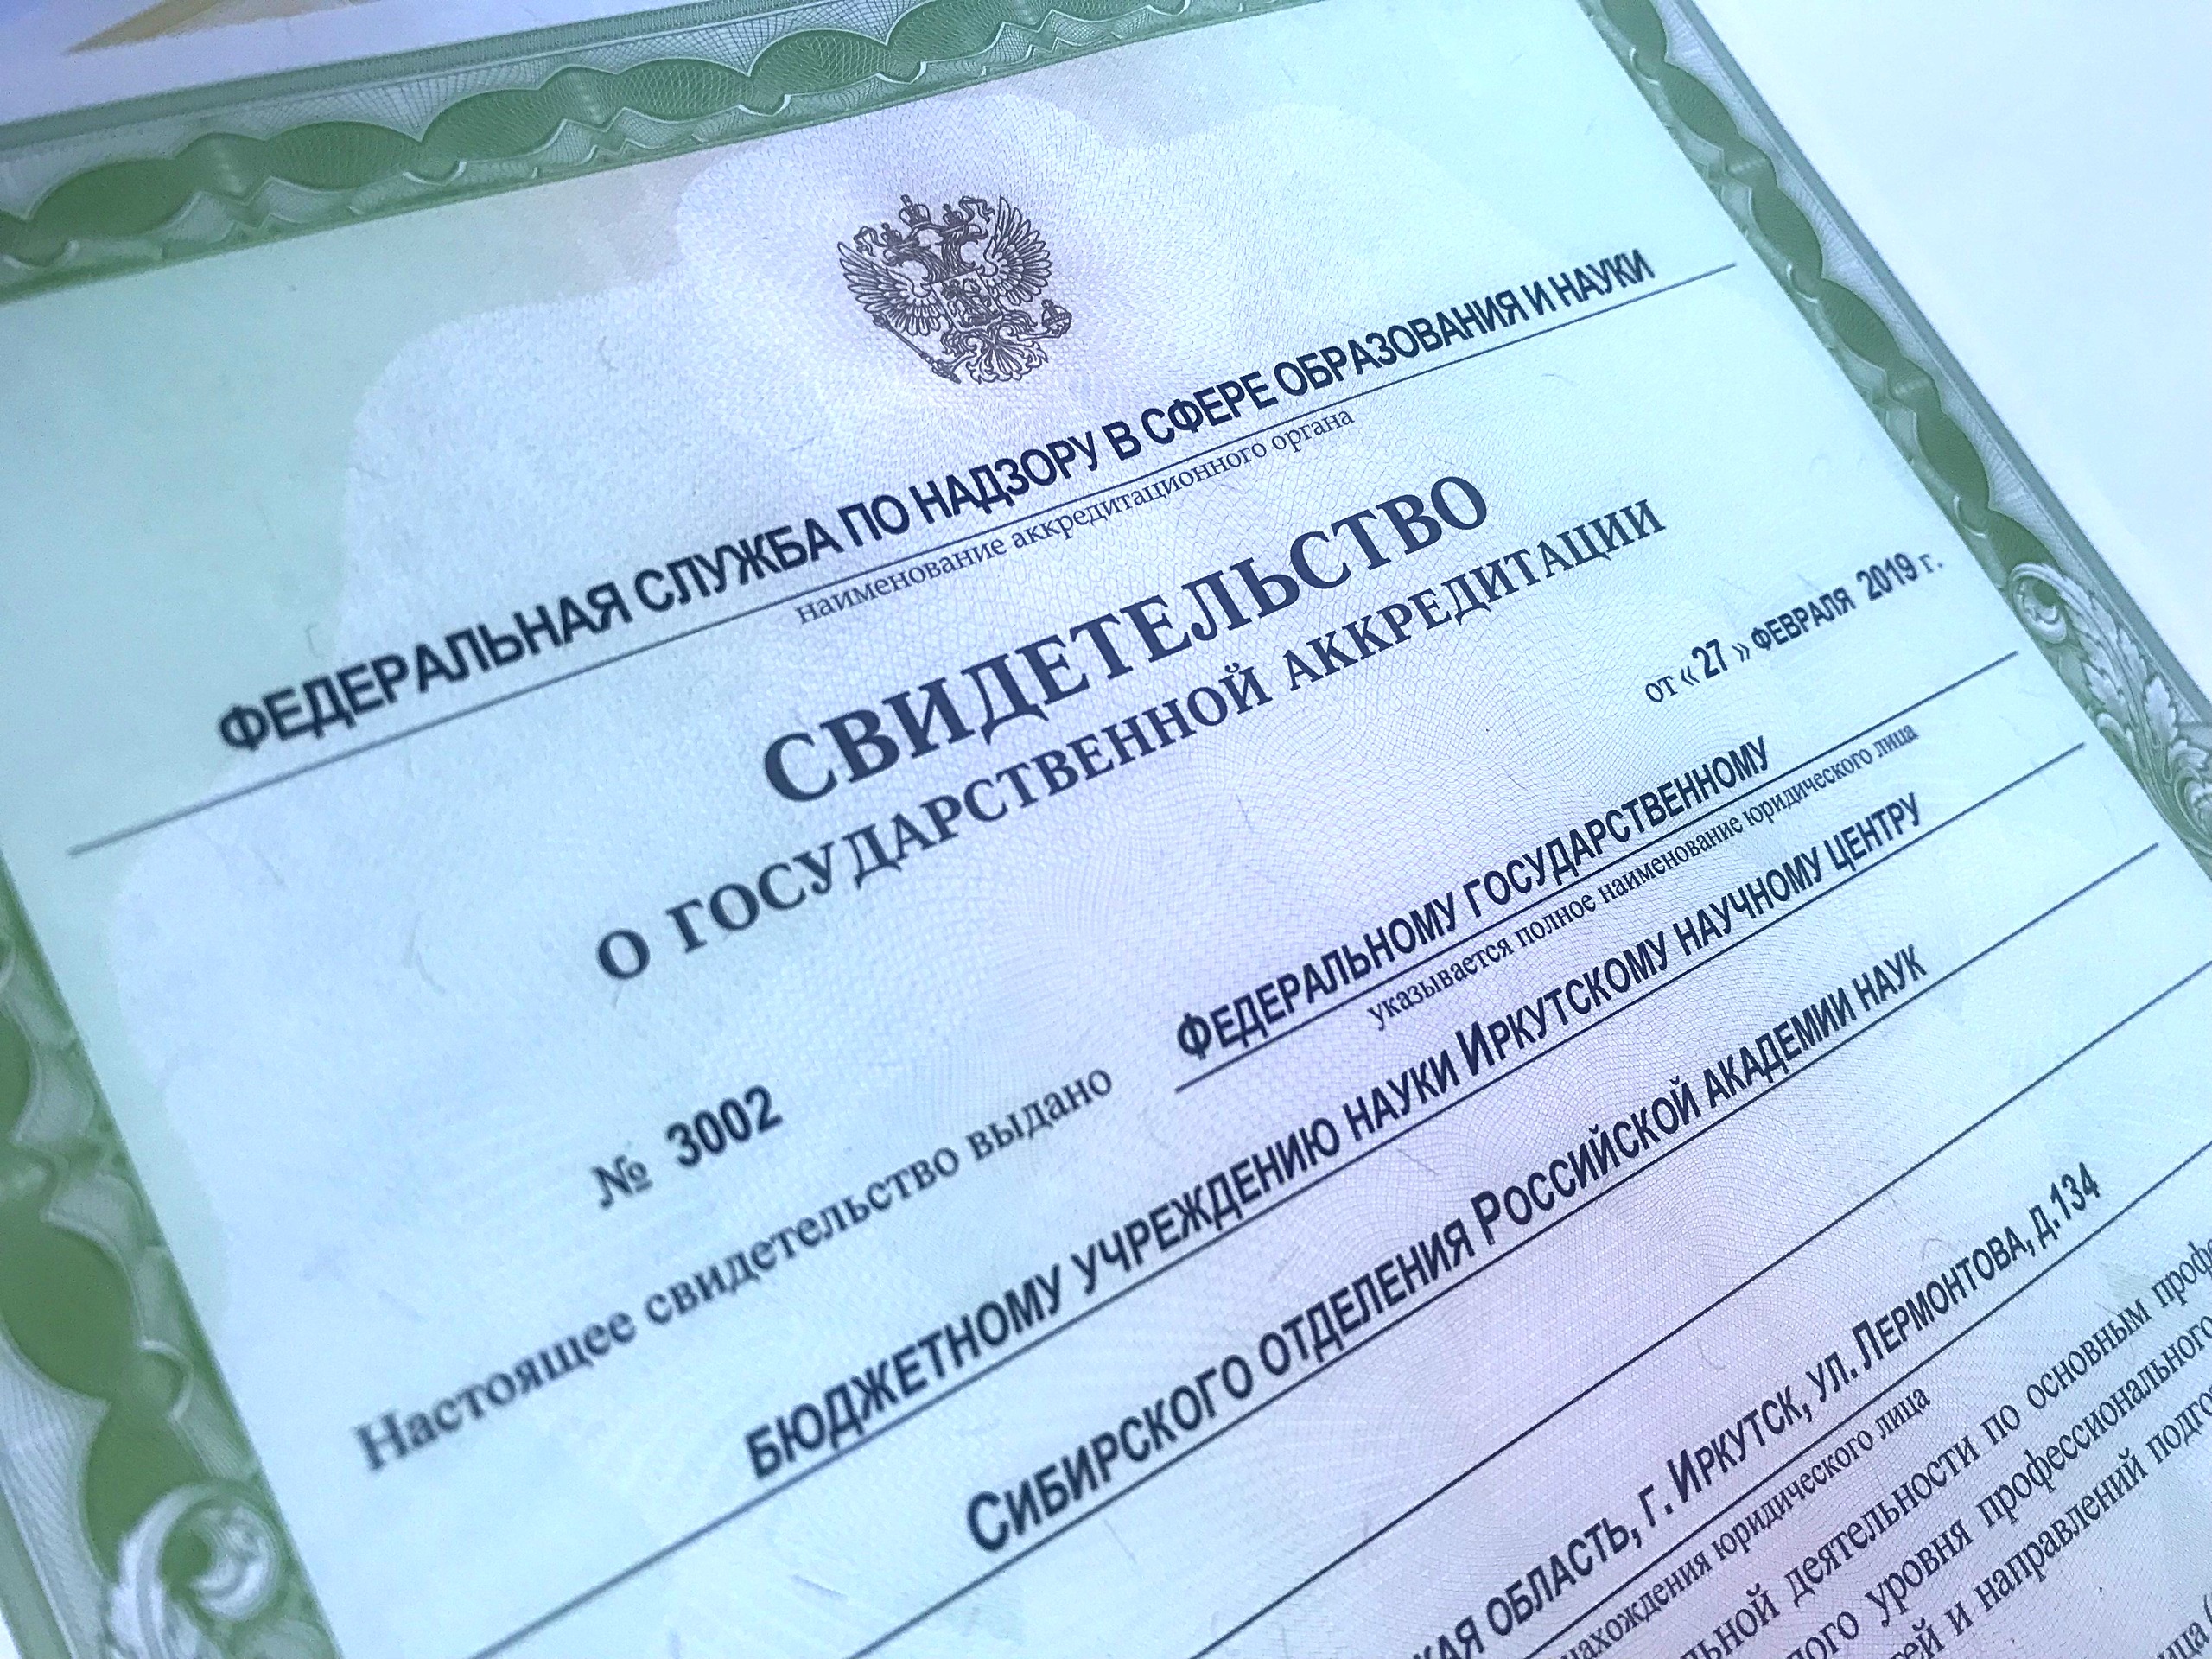 Иркутский научный центр СО РАН получил свидетельство о государственной аккредитации образовательной деятельности